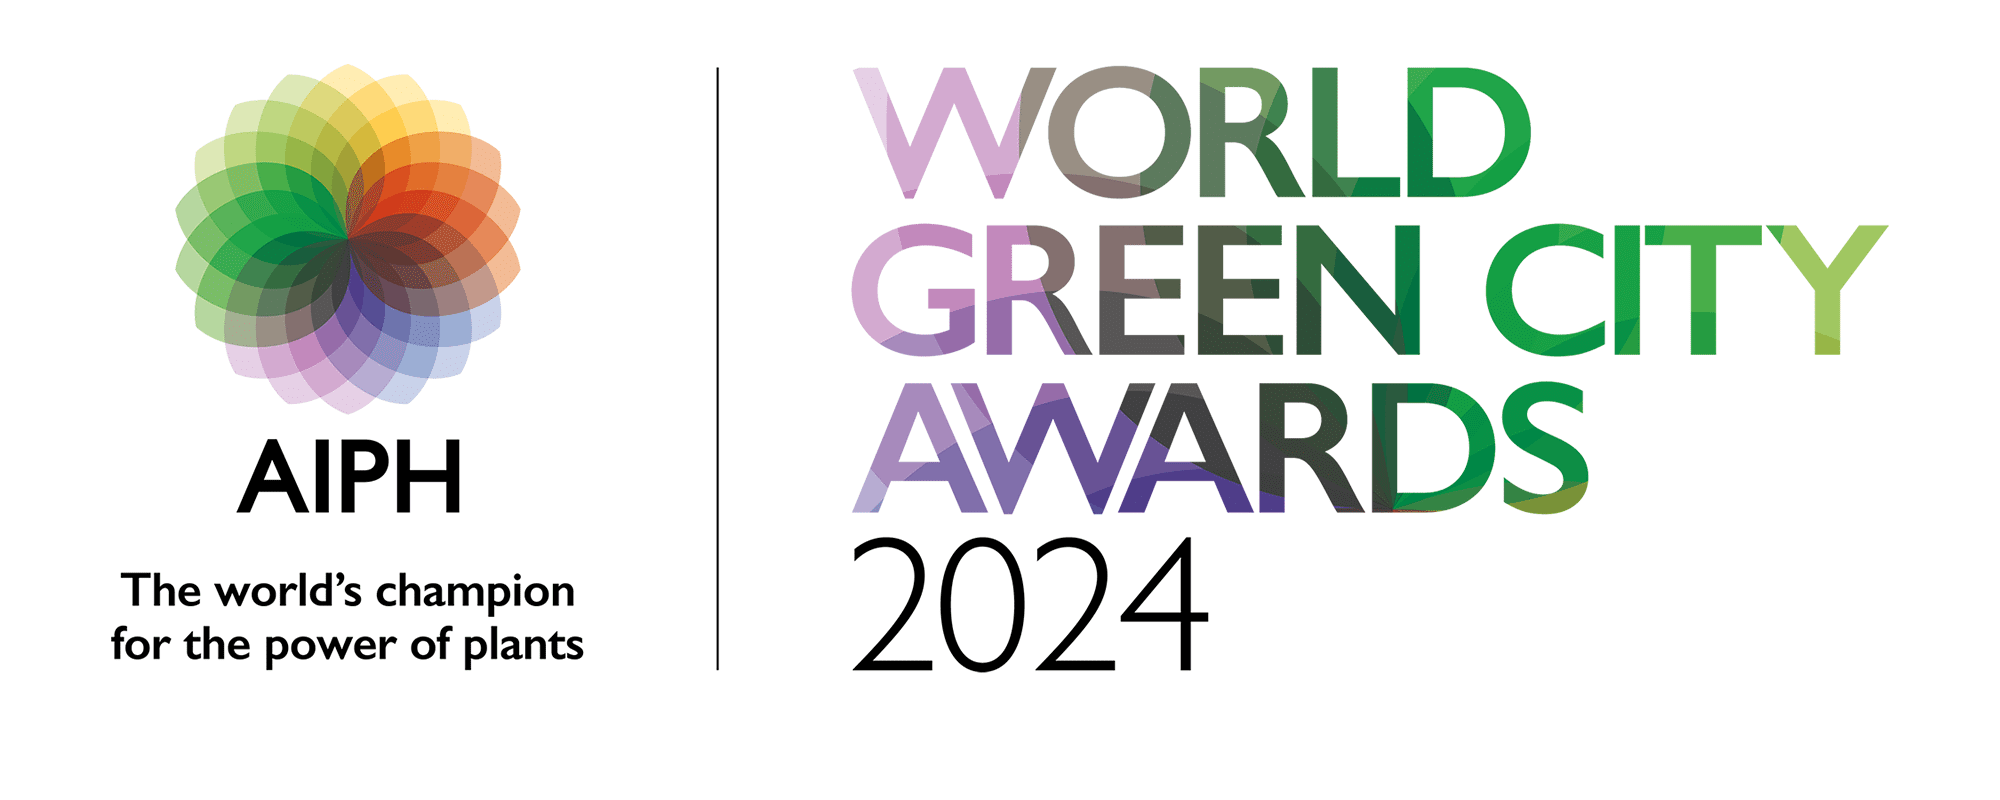 World Green City Awards 2024 Logo